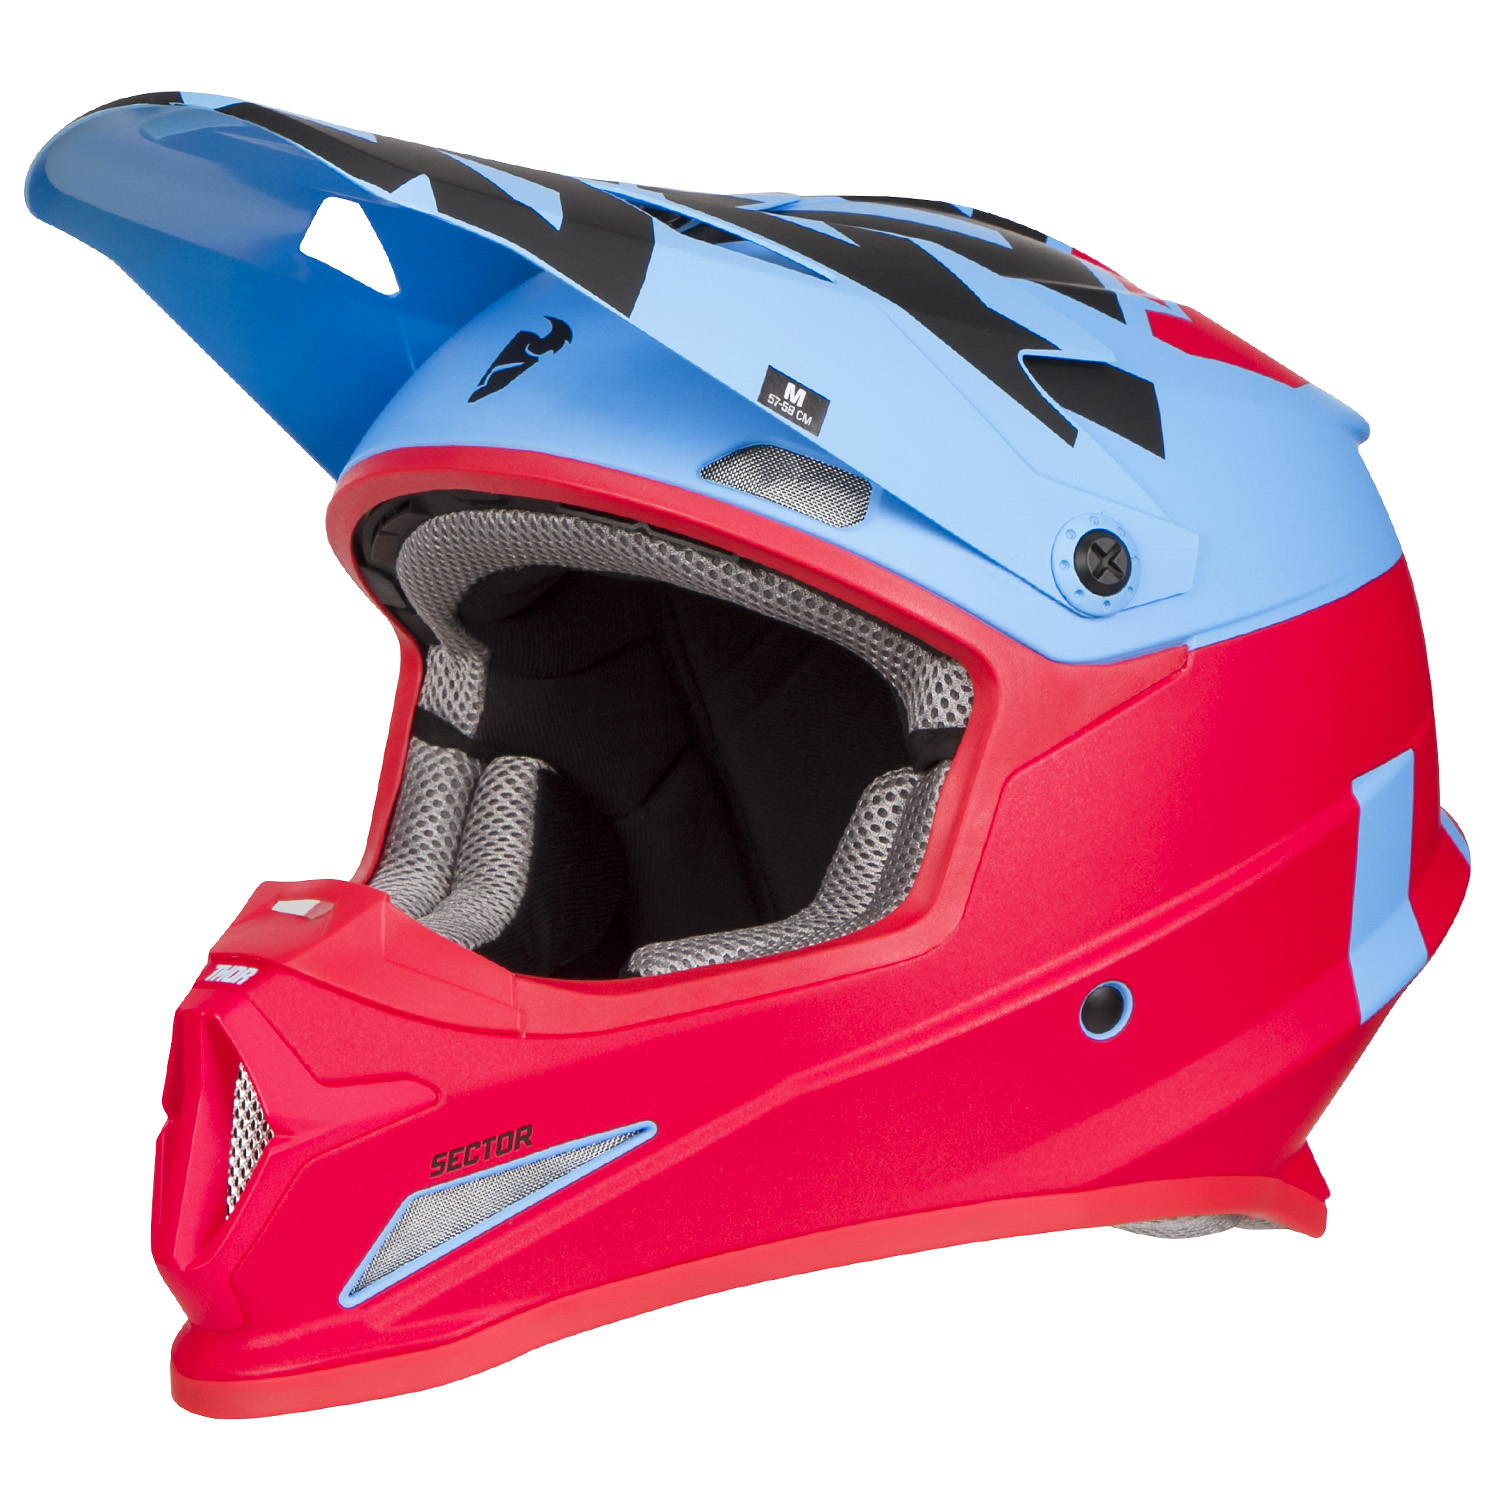 Thor Motocross-Helm Sector Level - Blau/Rot